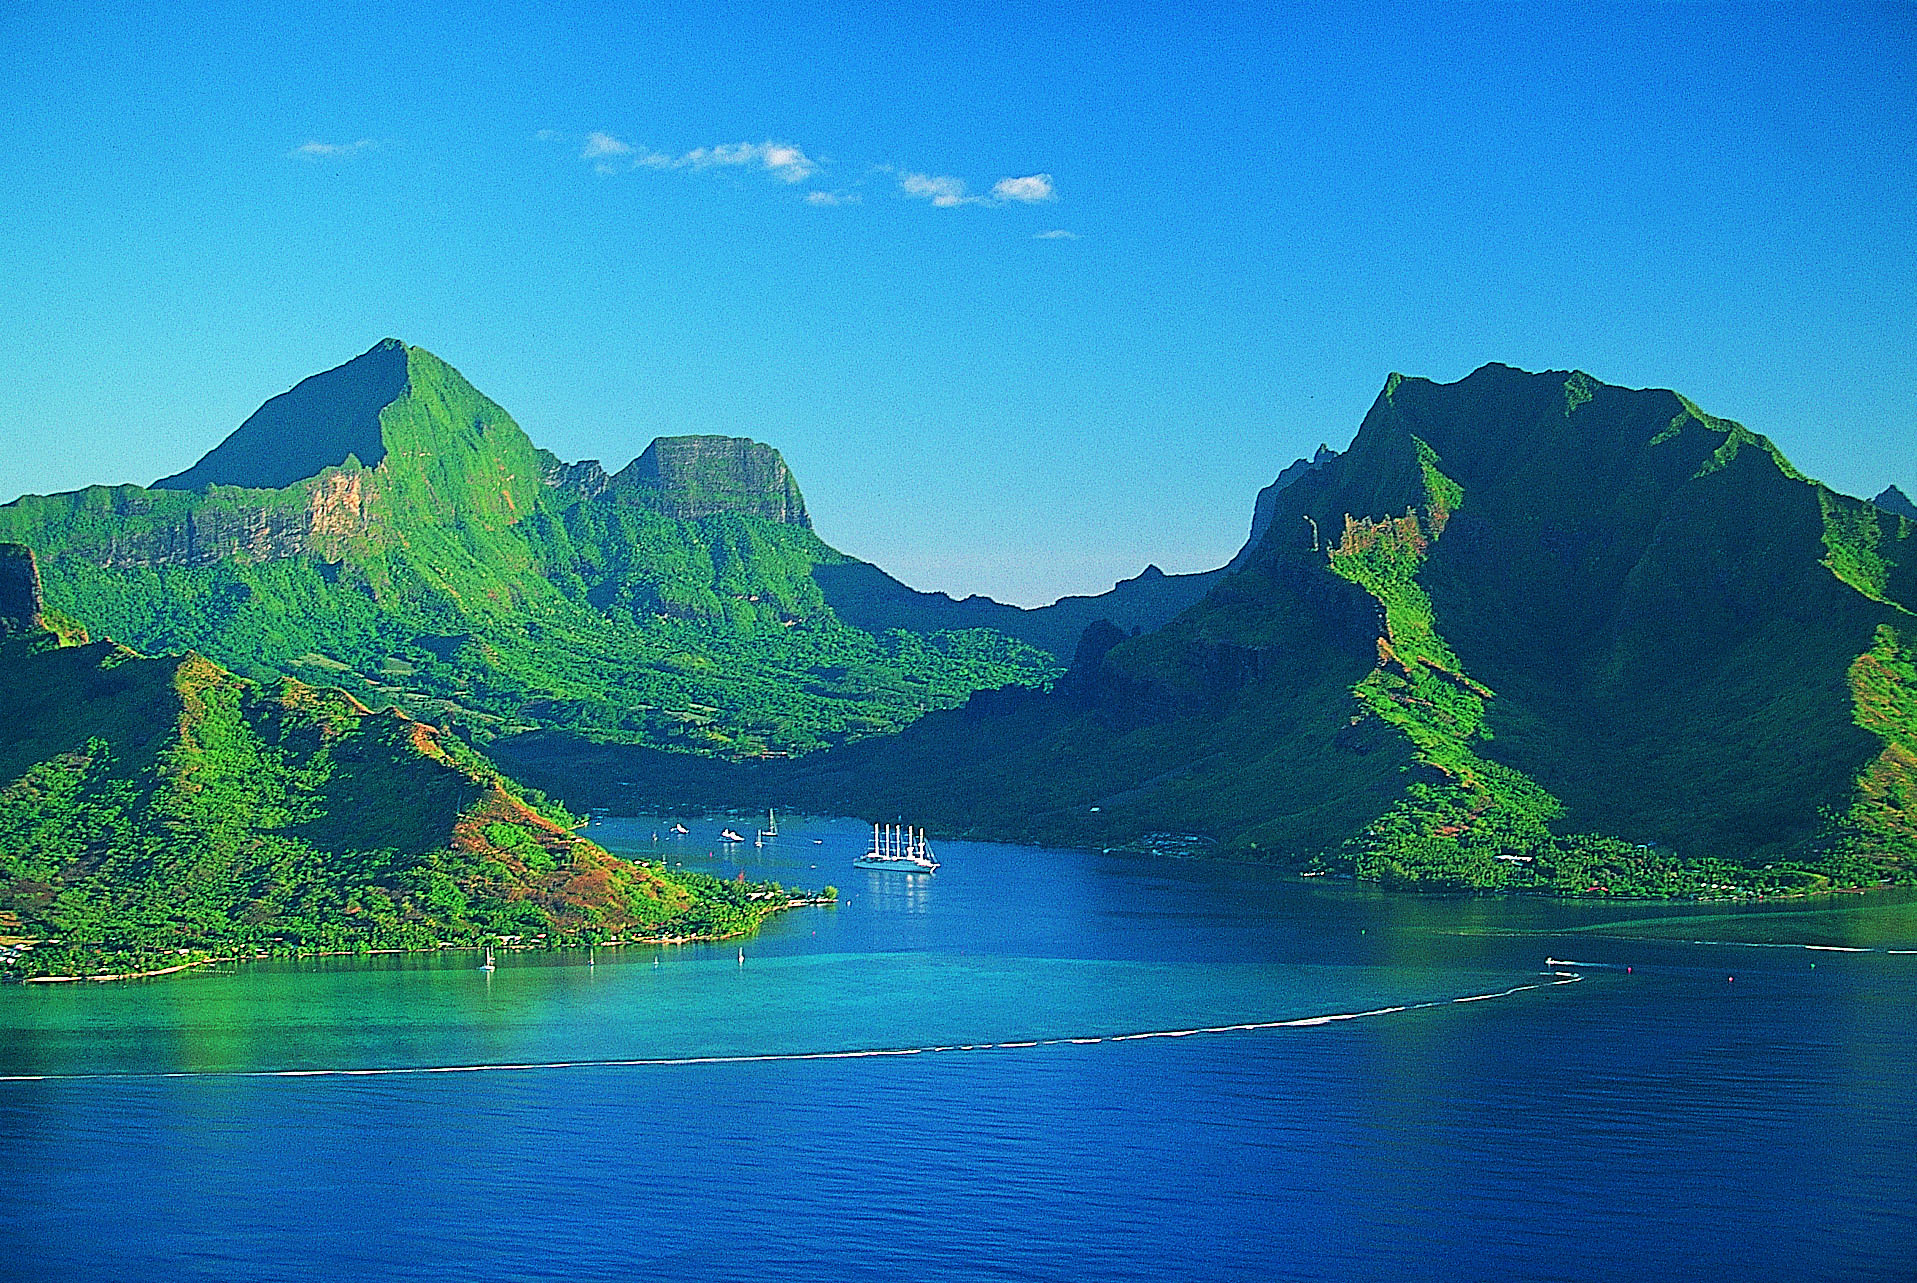 法属波利尼斯亚群岛 French Polynesia大溪地 TAHITI – 爱岛人 海岛旅行专家